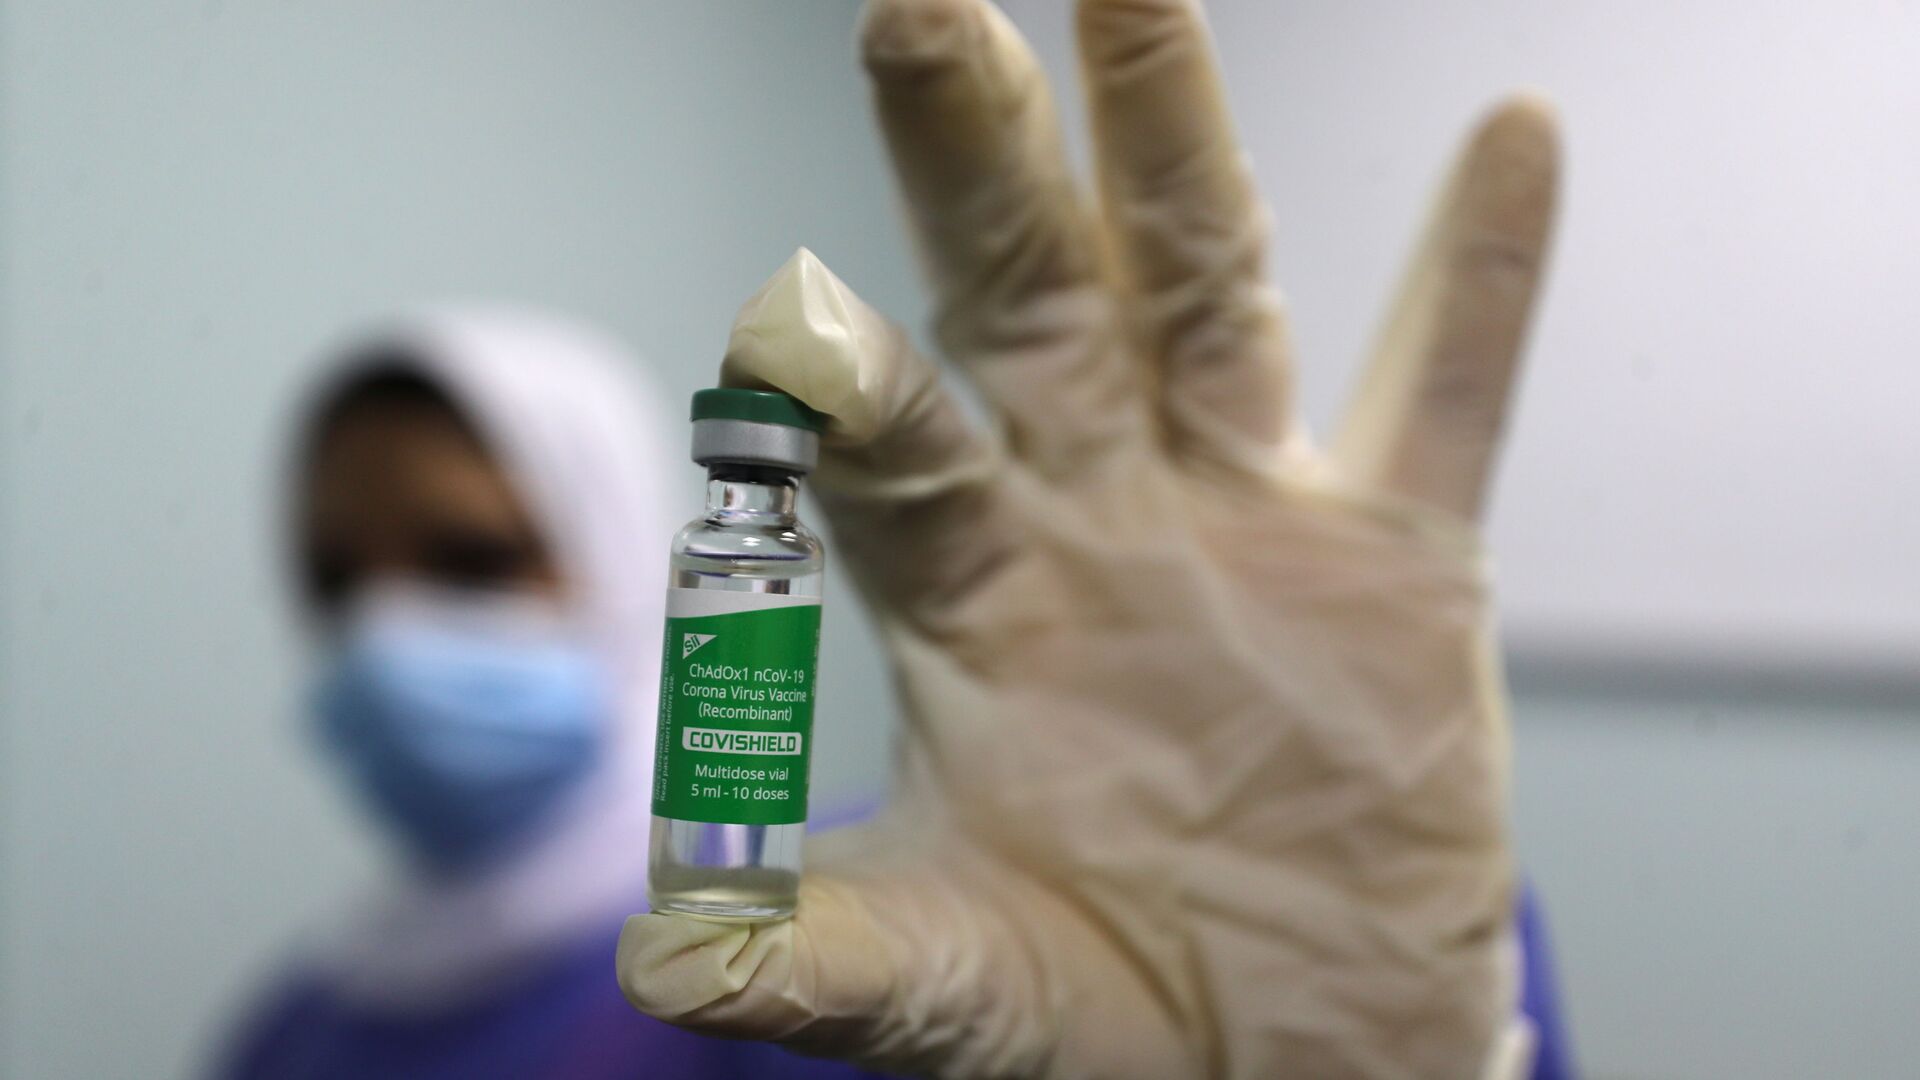 بدء تطعيم واسع النطاق في مصر ضد فيروس كورونا (كوفيد-19)، القاهرة، 4 مارس 2021 - سبوتنيك عربي, 1920, 27.10.2021